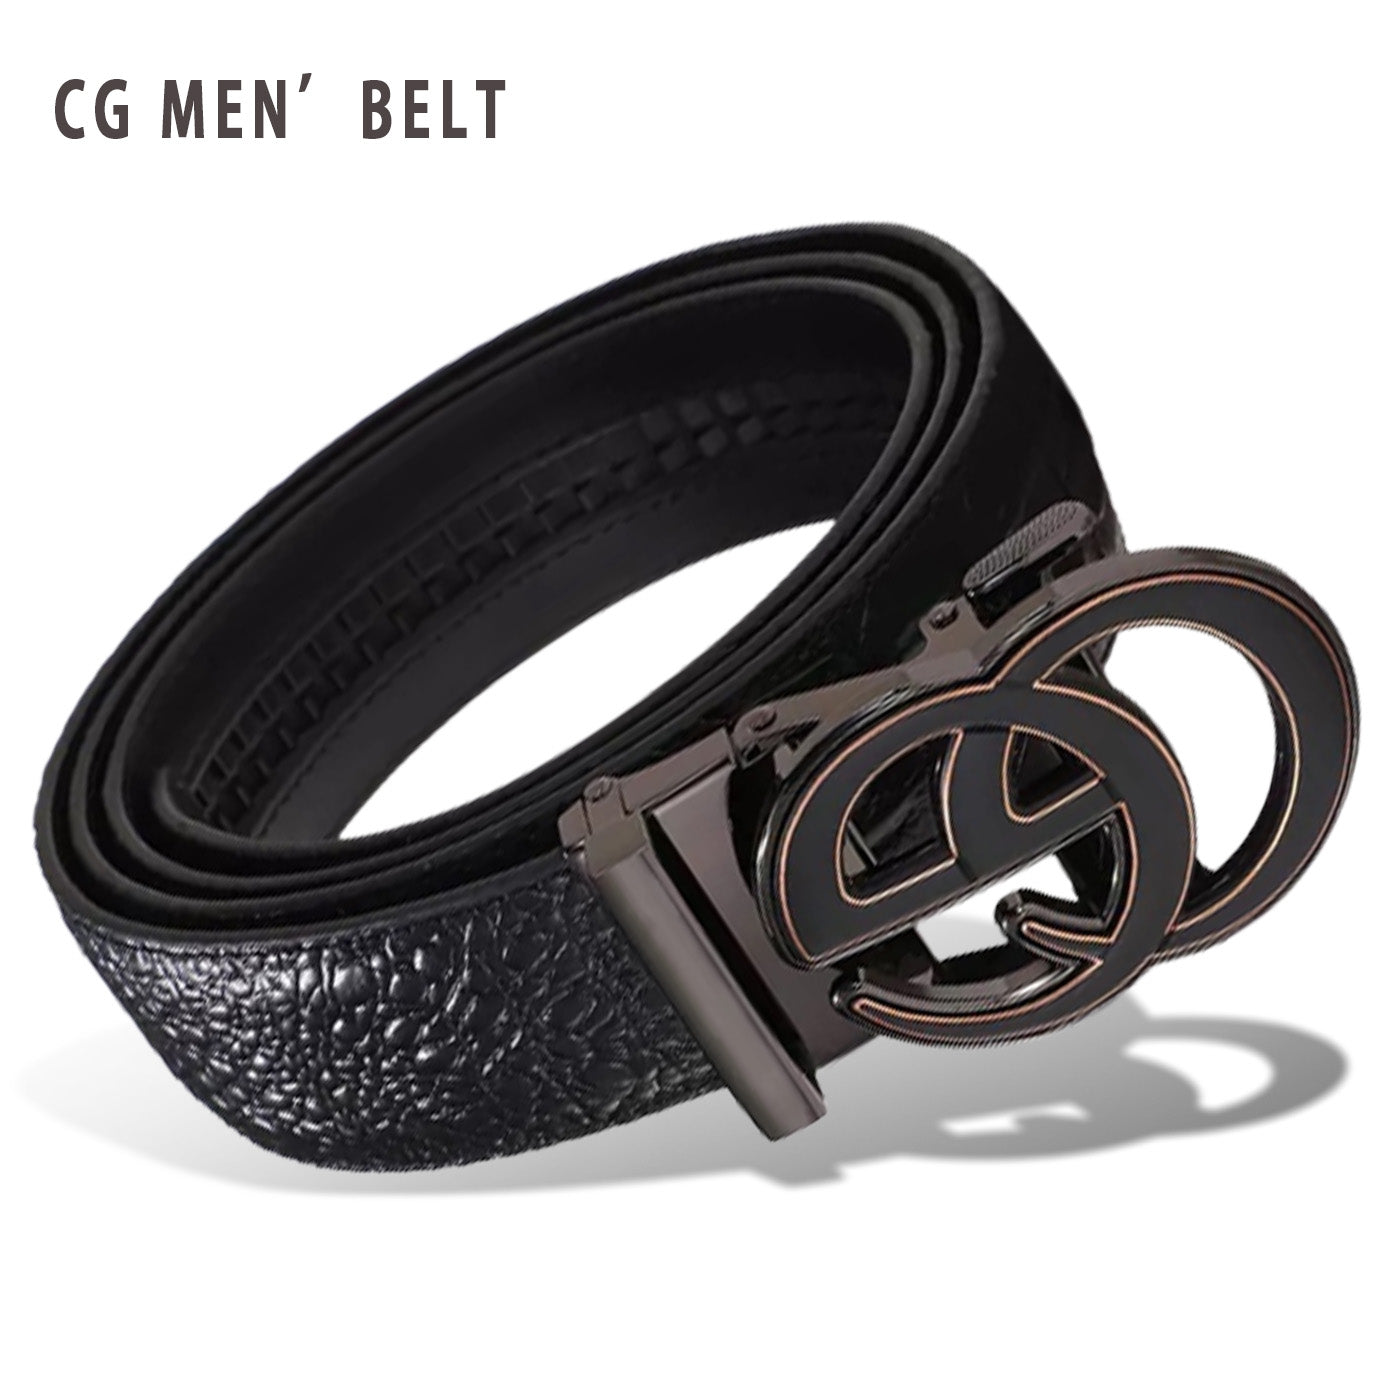 Double G Men’s Metal Belt | CG Men's Belt | Black